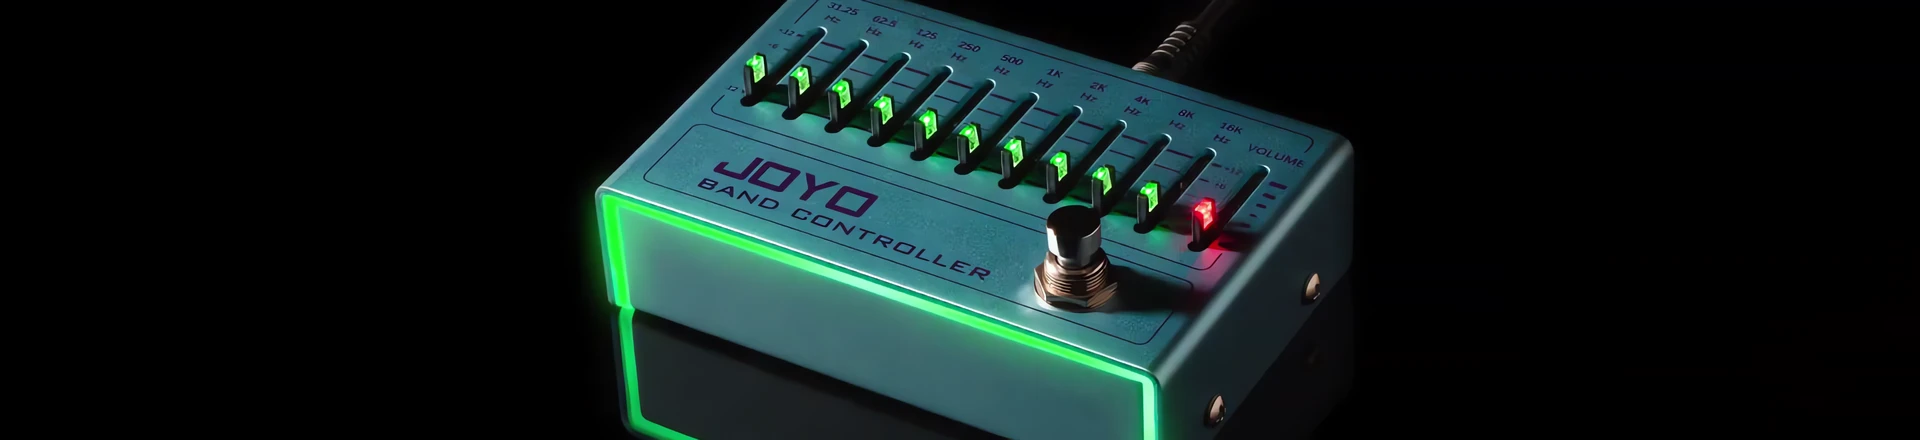 NAMM'19: Kolejna nowość od Joyo - equalizer Band Controller 